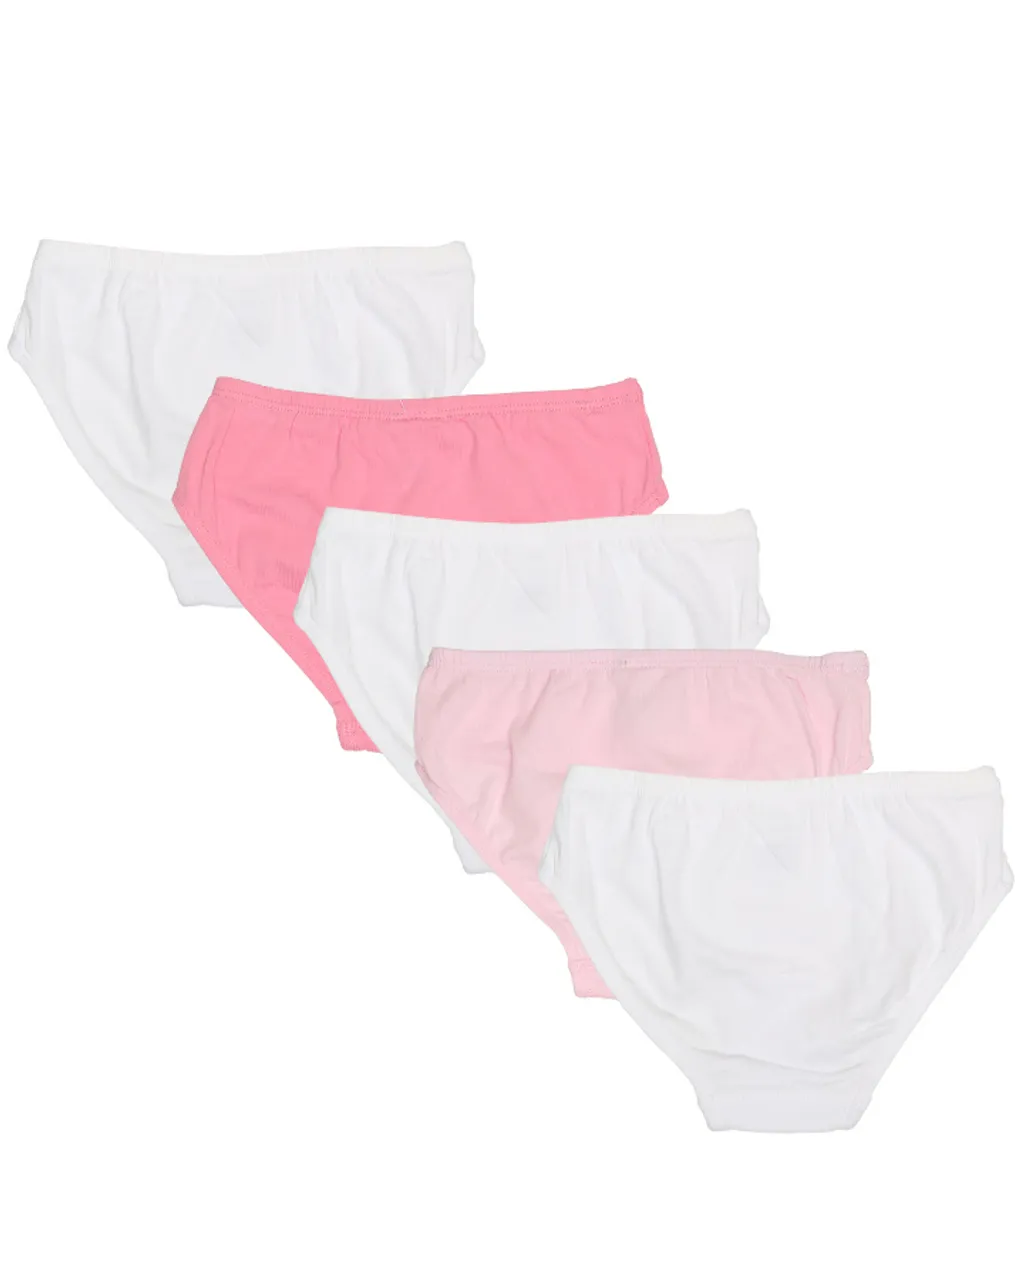 Slip ORIGINAL CLASSICS 5er Pack in rosa/weiß